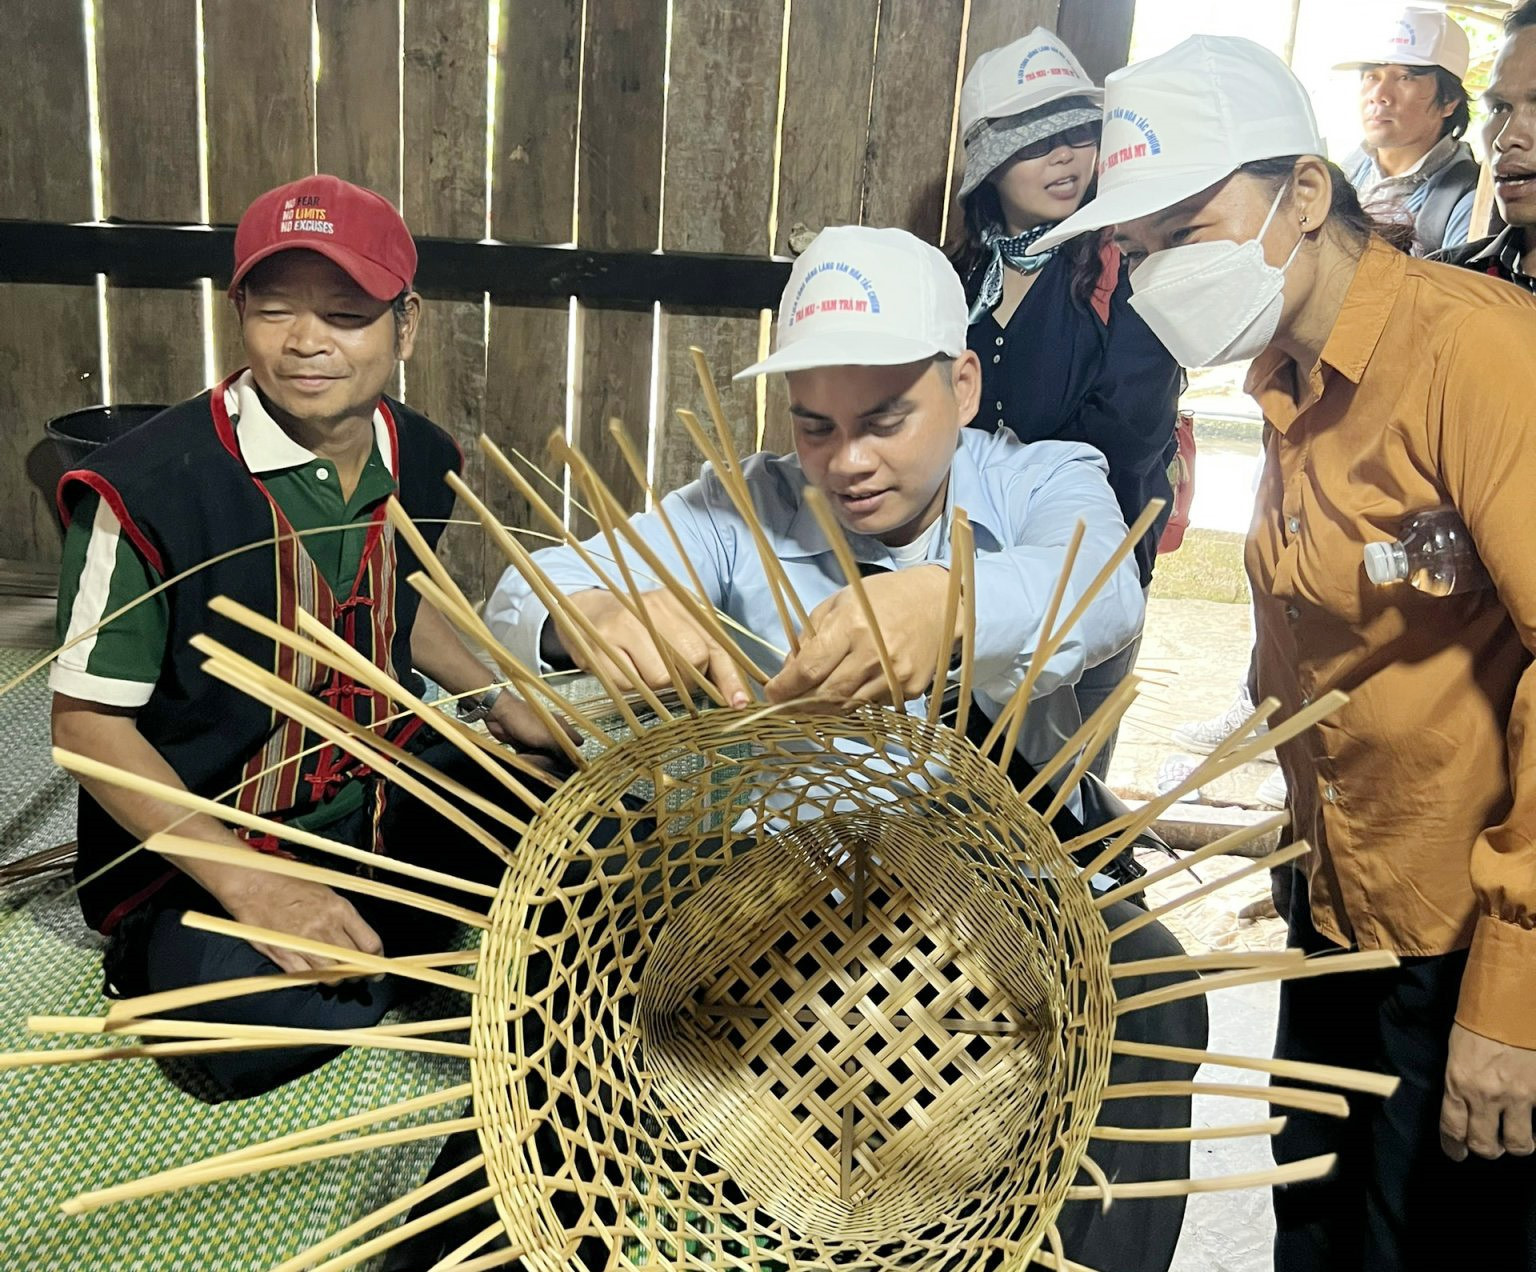 Du khách cùng tham gia nghề đan lát truyền thống với người dân. Ảnh: D.L